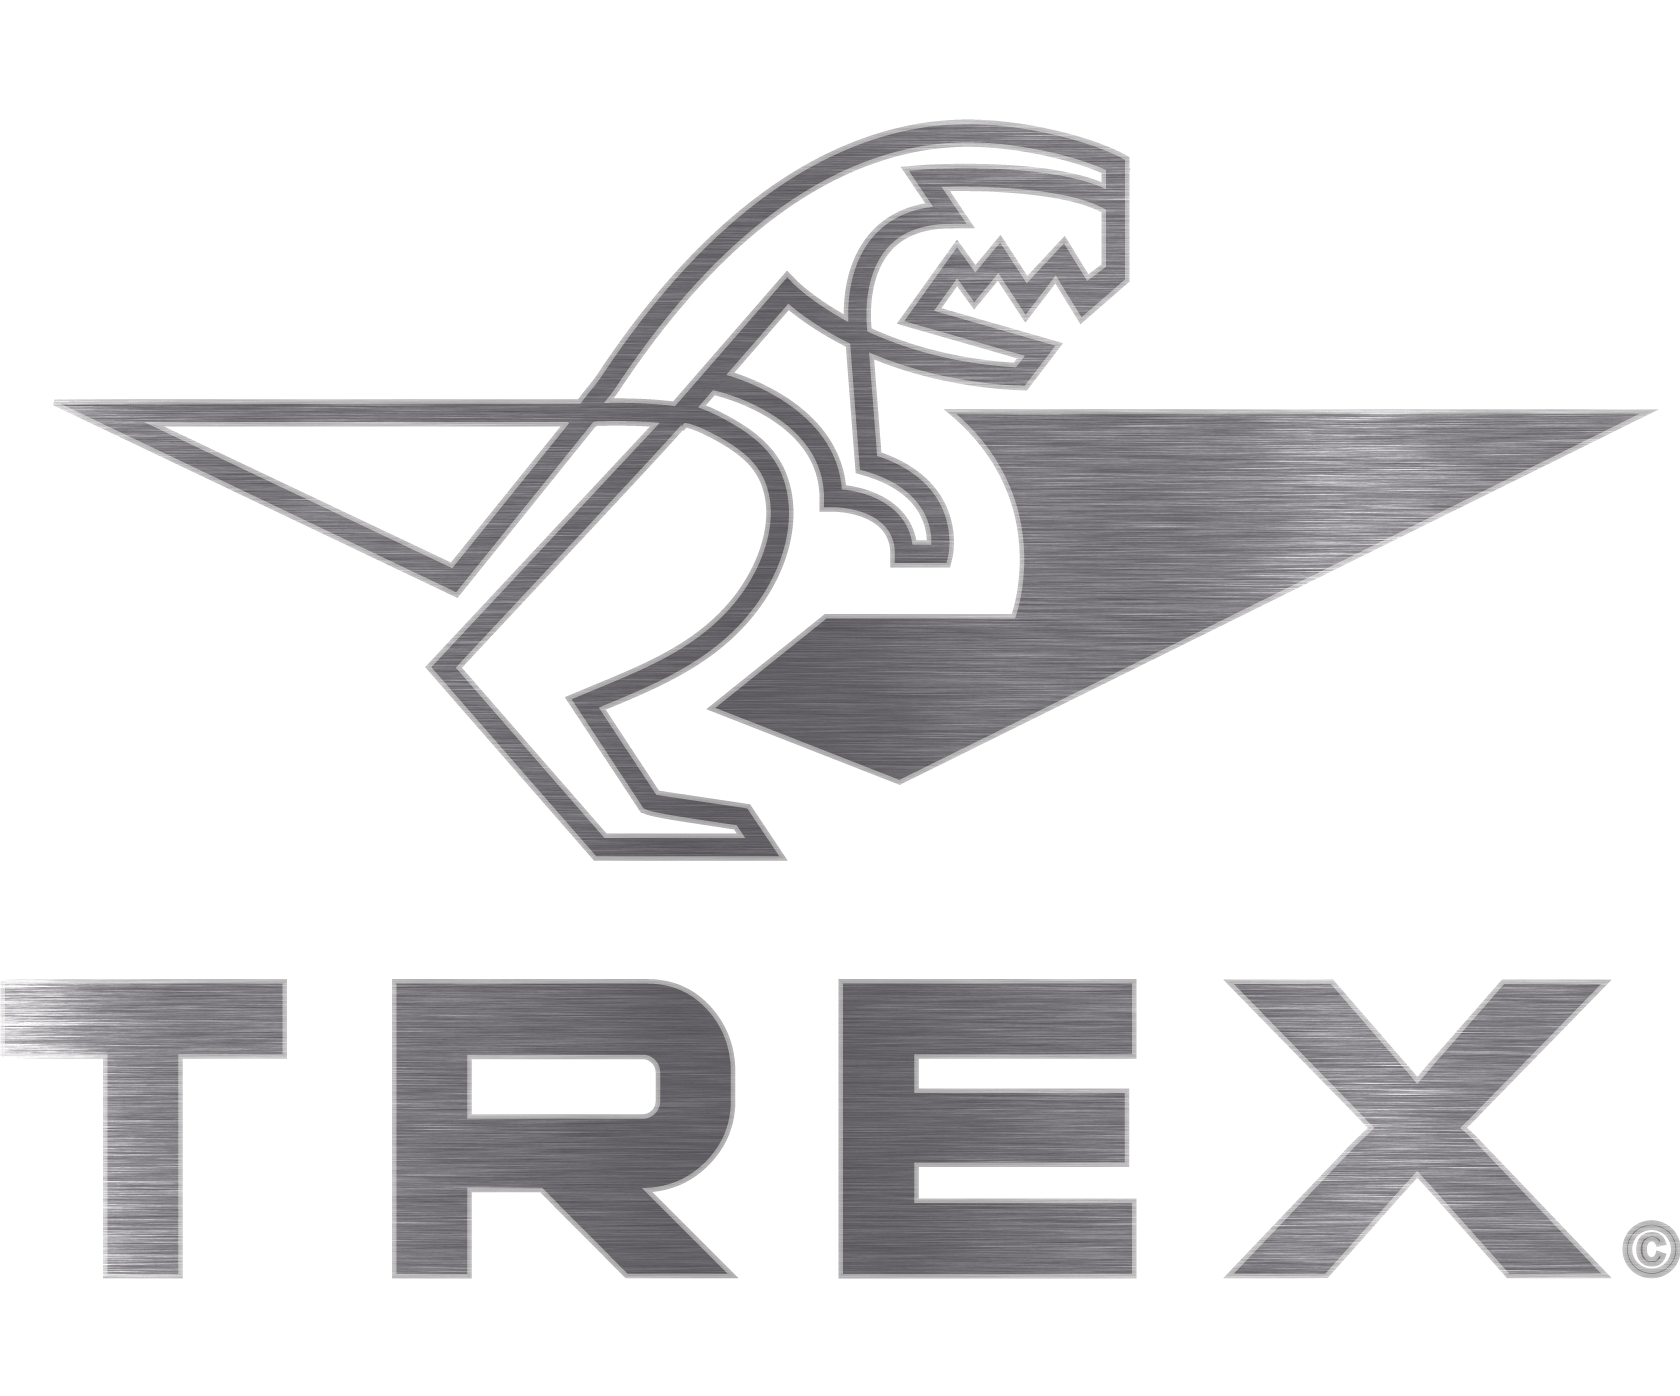 TREX Logo